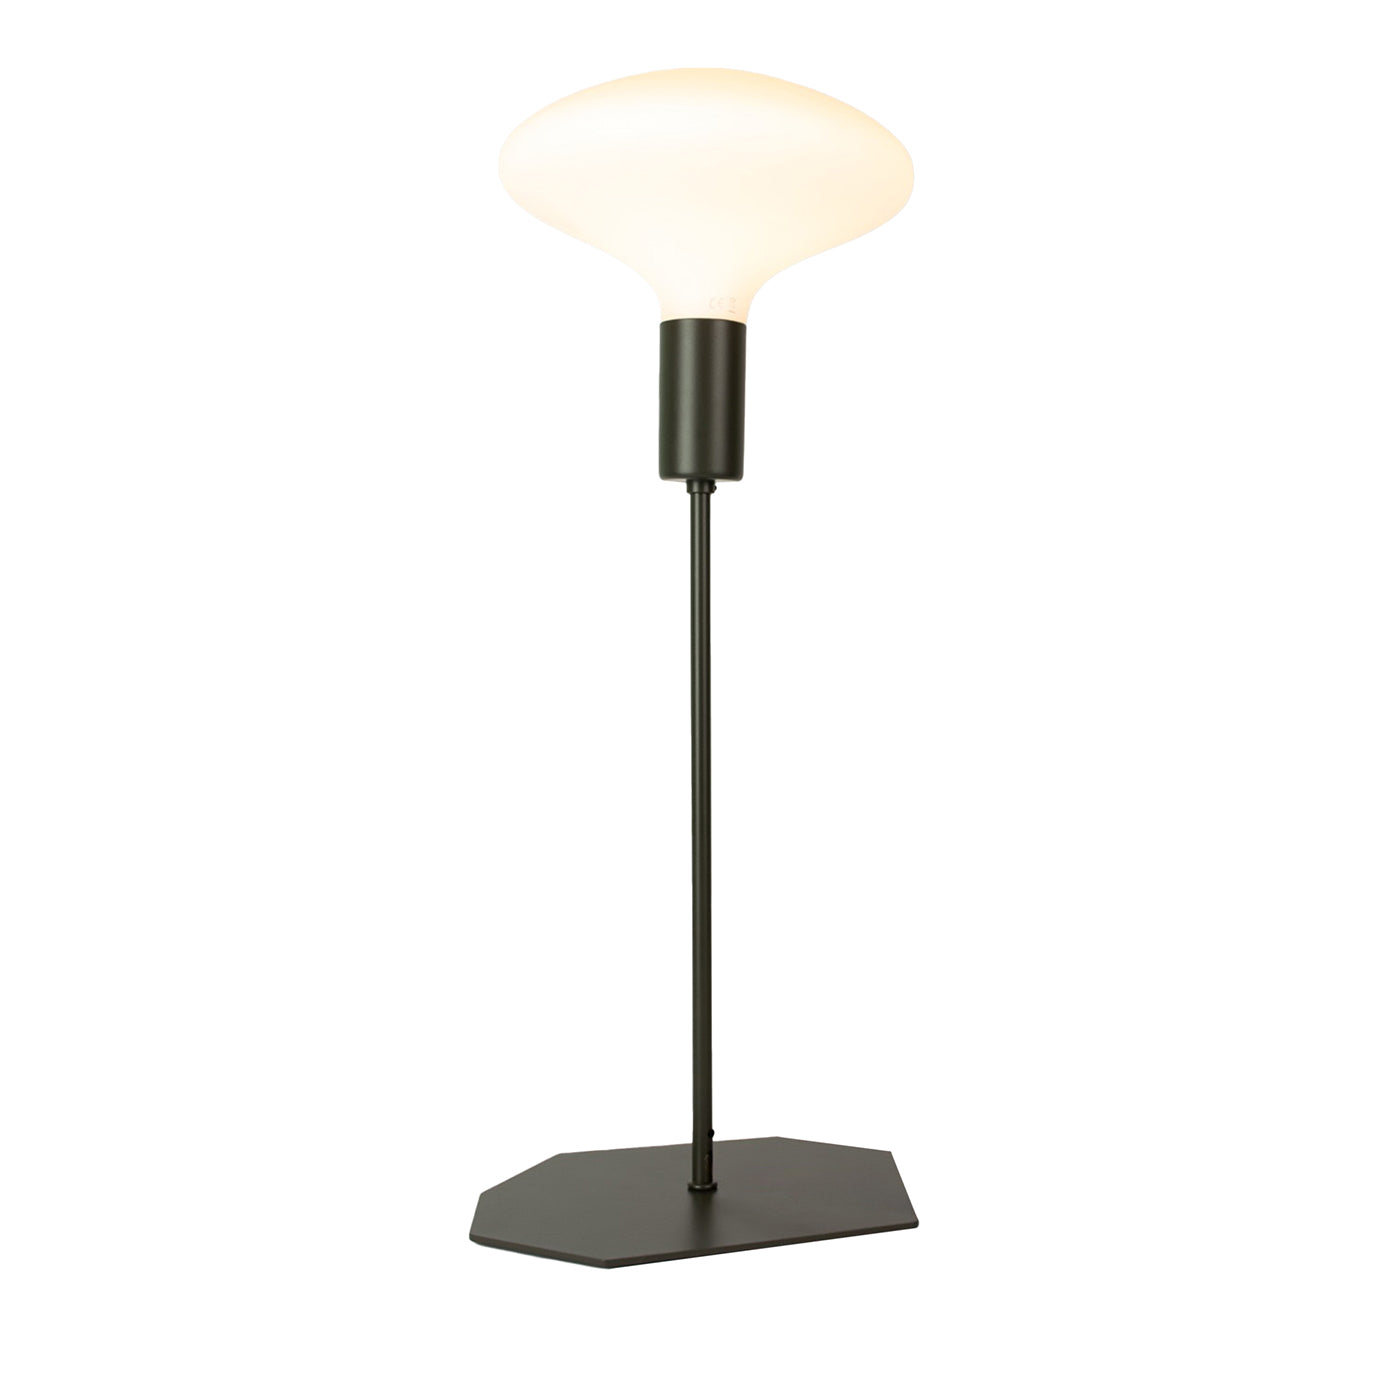 Peperita 450 Metal Table Lamp  - Main view